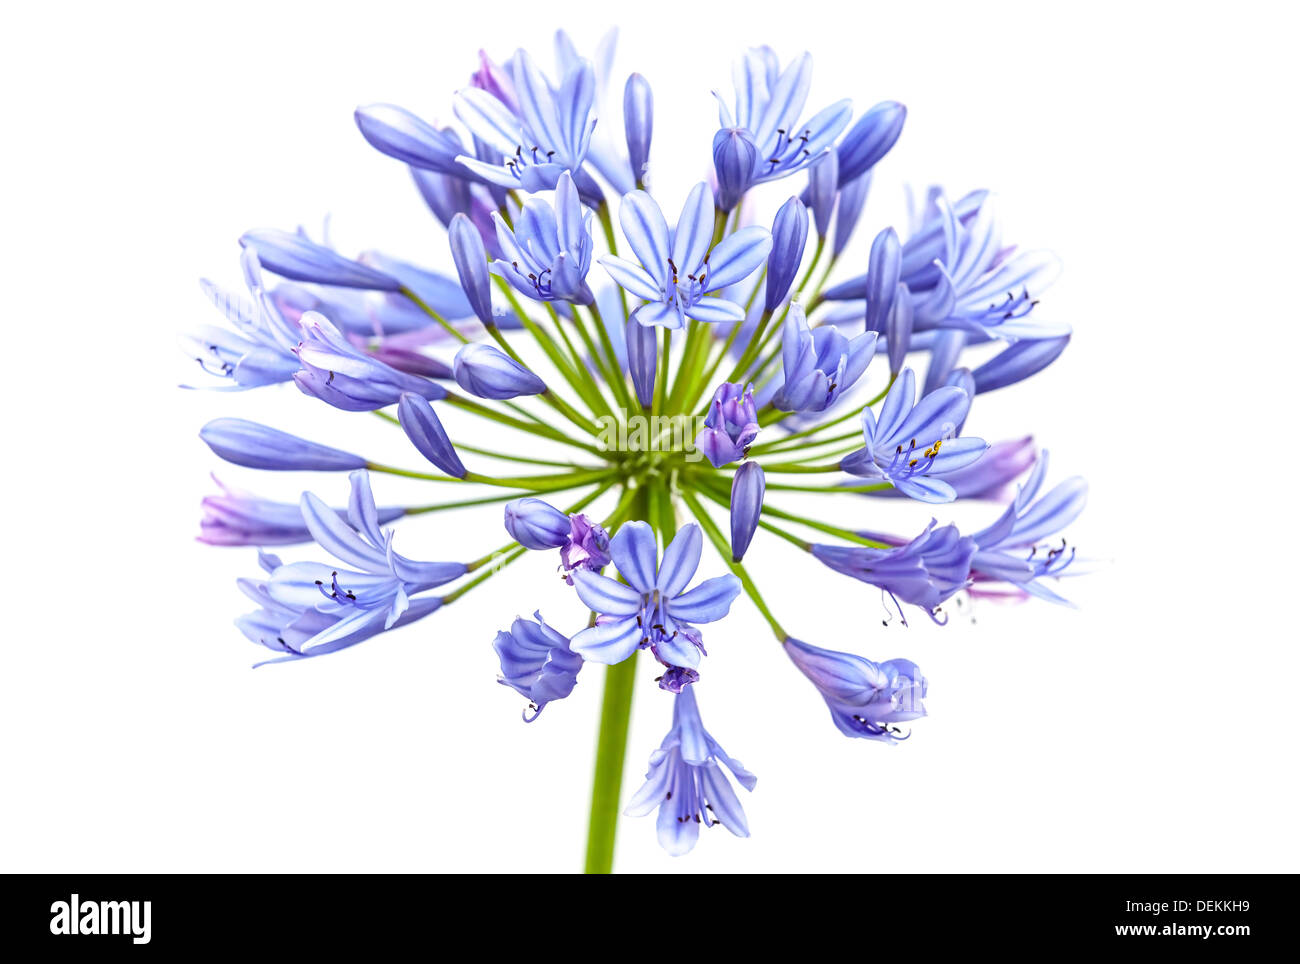 Bright blue Agapanthus flower. Macro photo isolated on white Stock Photo